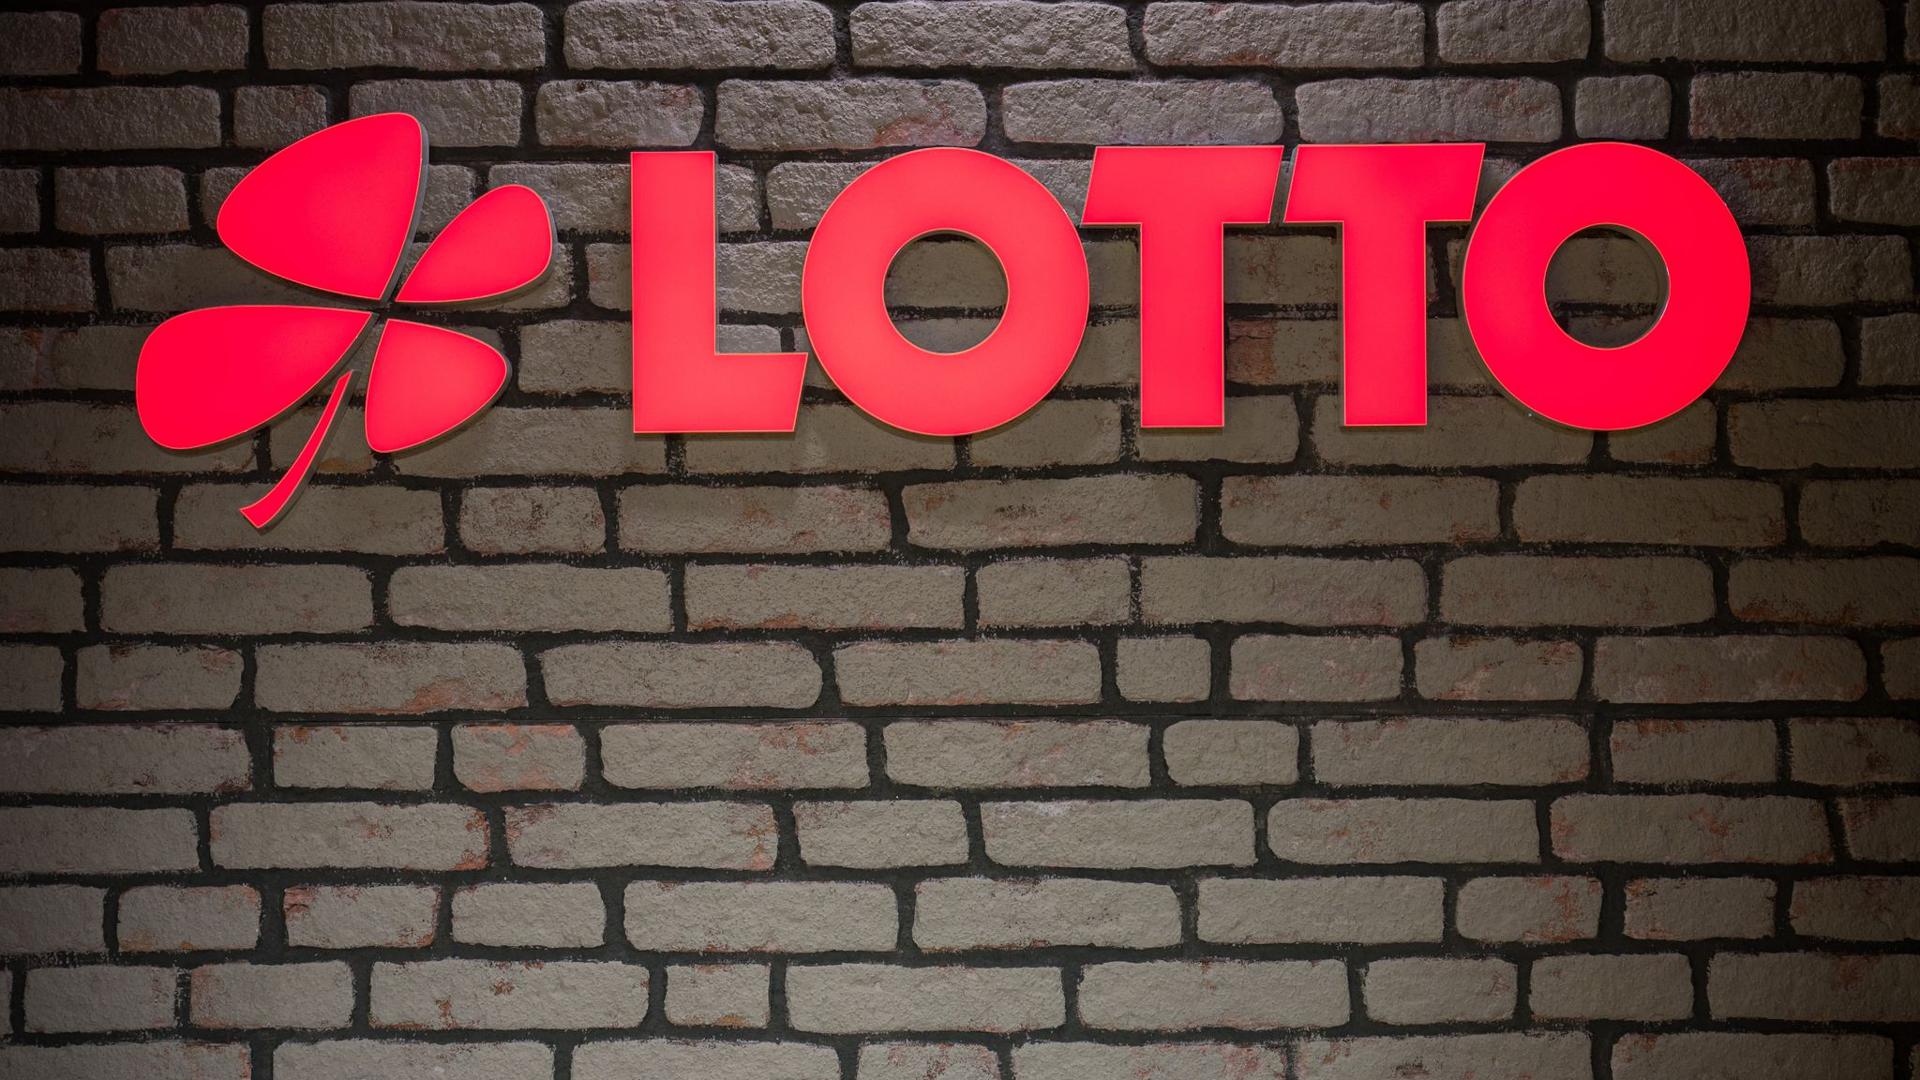 Das Lotto Logo leuchtet an einer Wand.